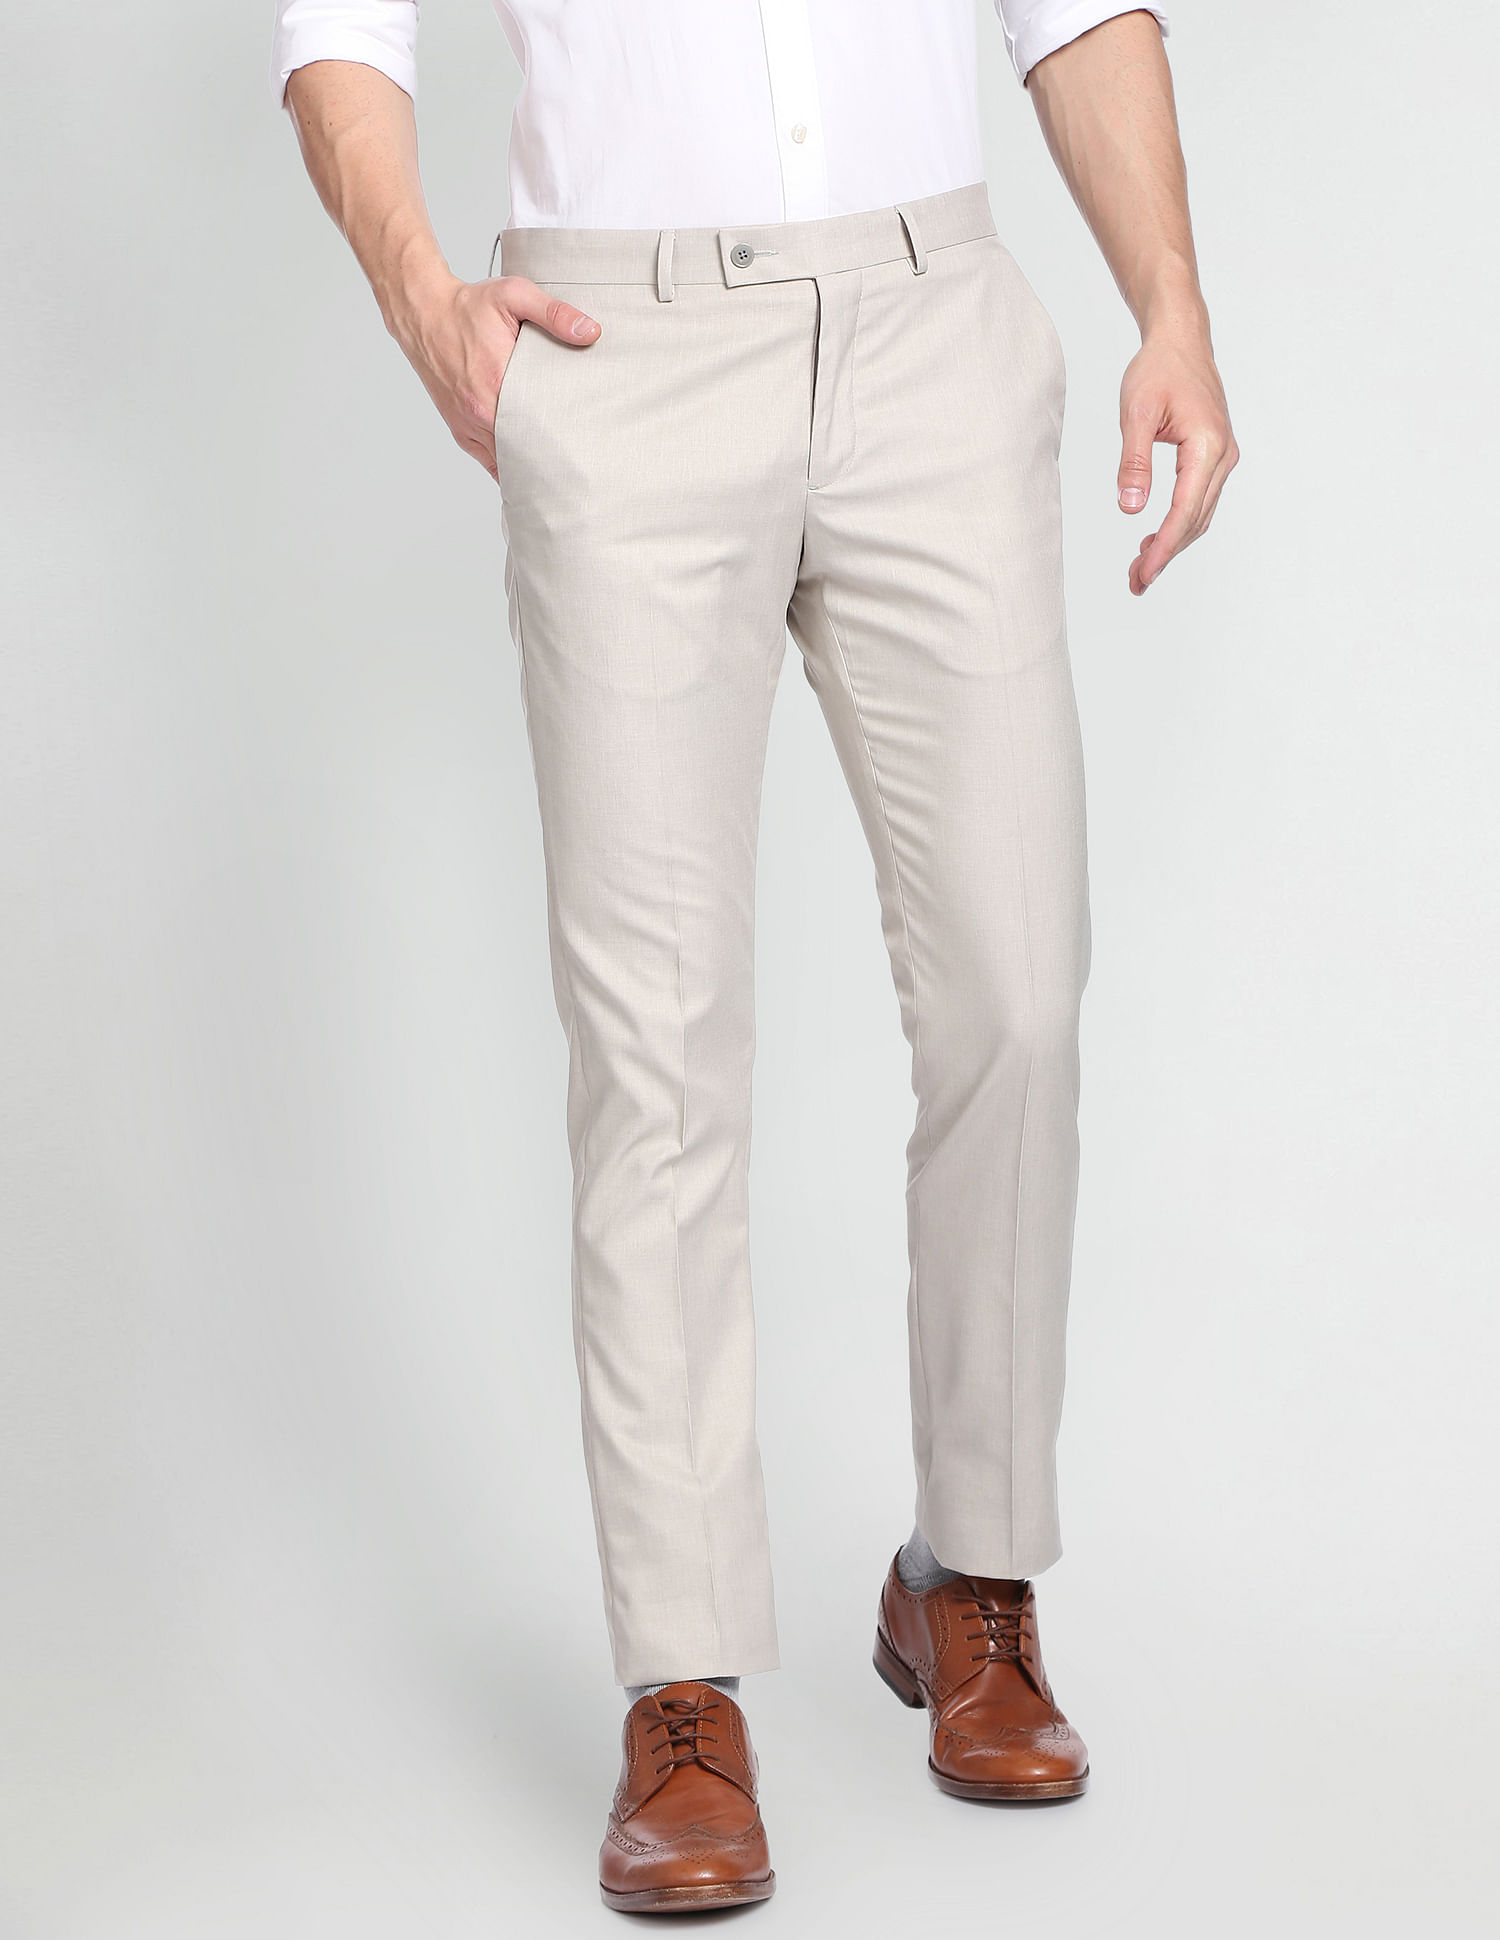 Buy Women Grey Textured Business Casual Regular Fit Trousers Online -  478779 | Van Heusen